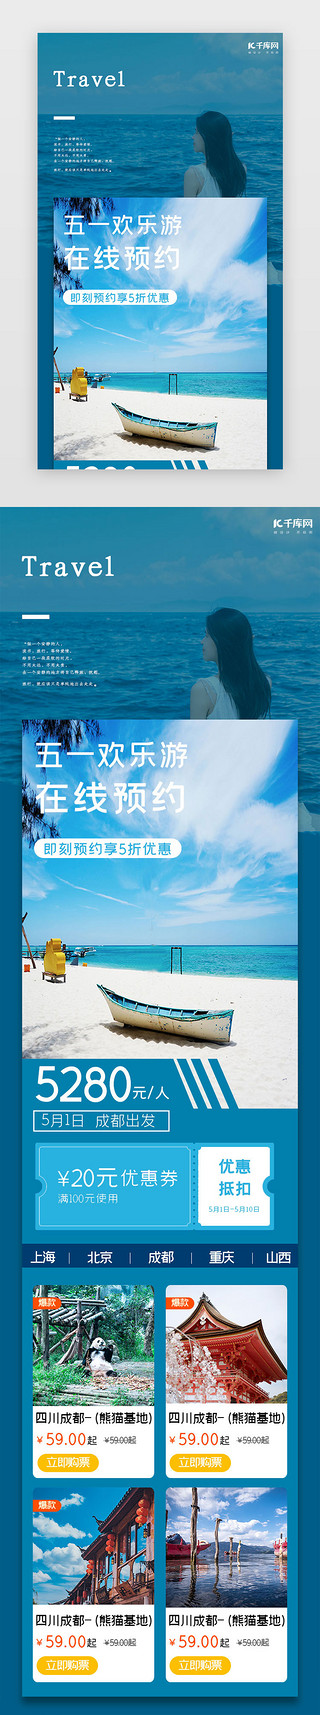 沙滩上的模特UI设计素材_蓝色简约五一沙滩旅游提前约h5长图